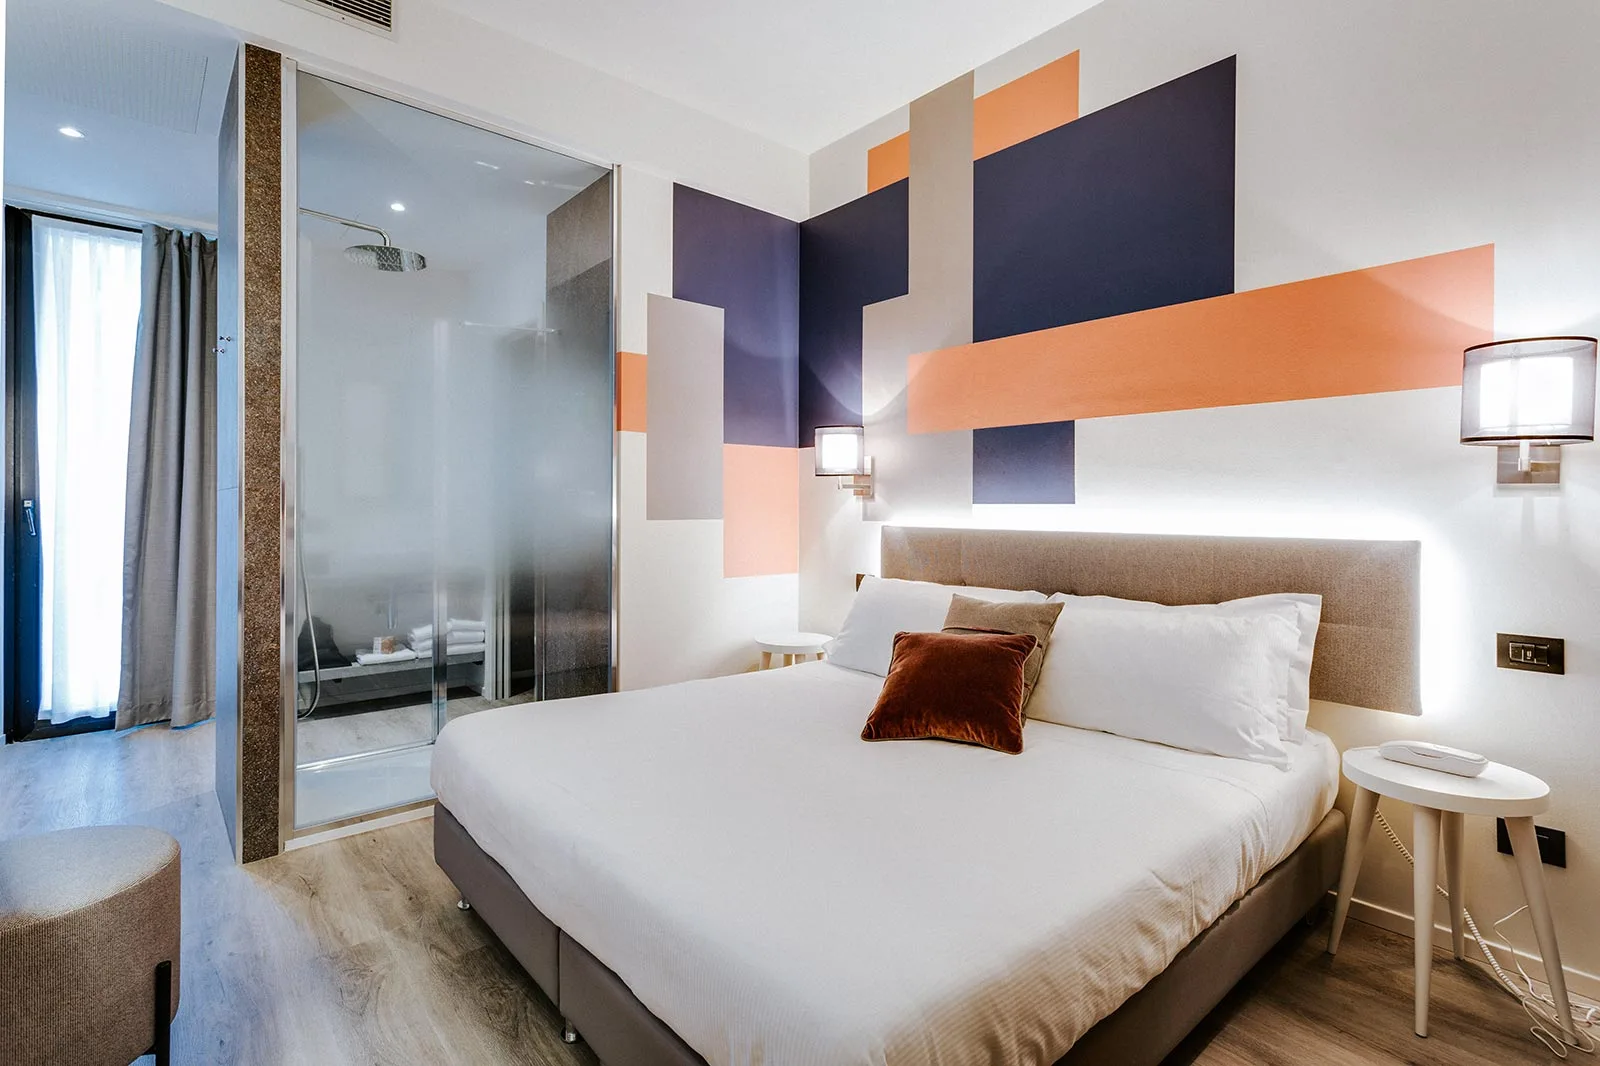 arredamento hotel geometrie scomposte colore testata